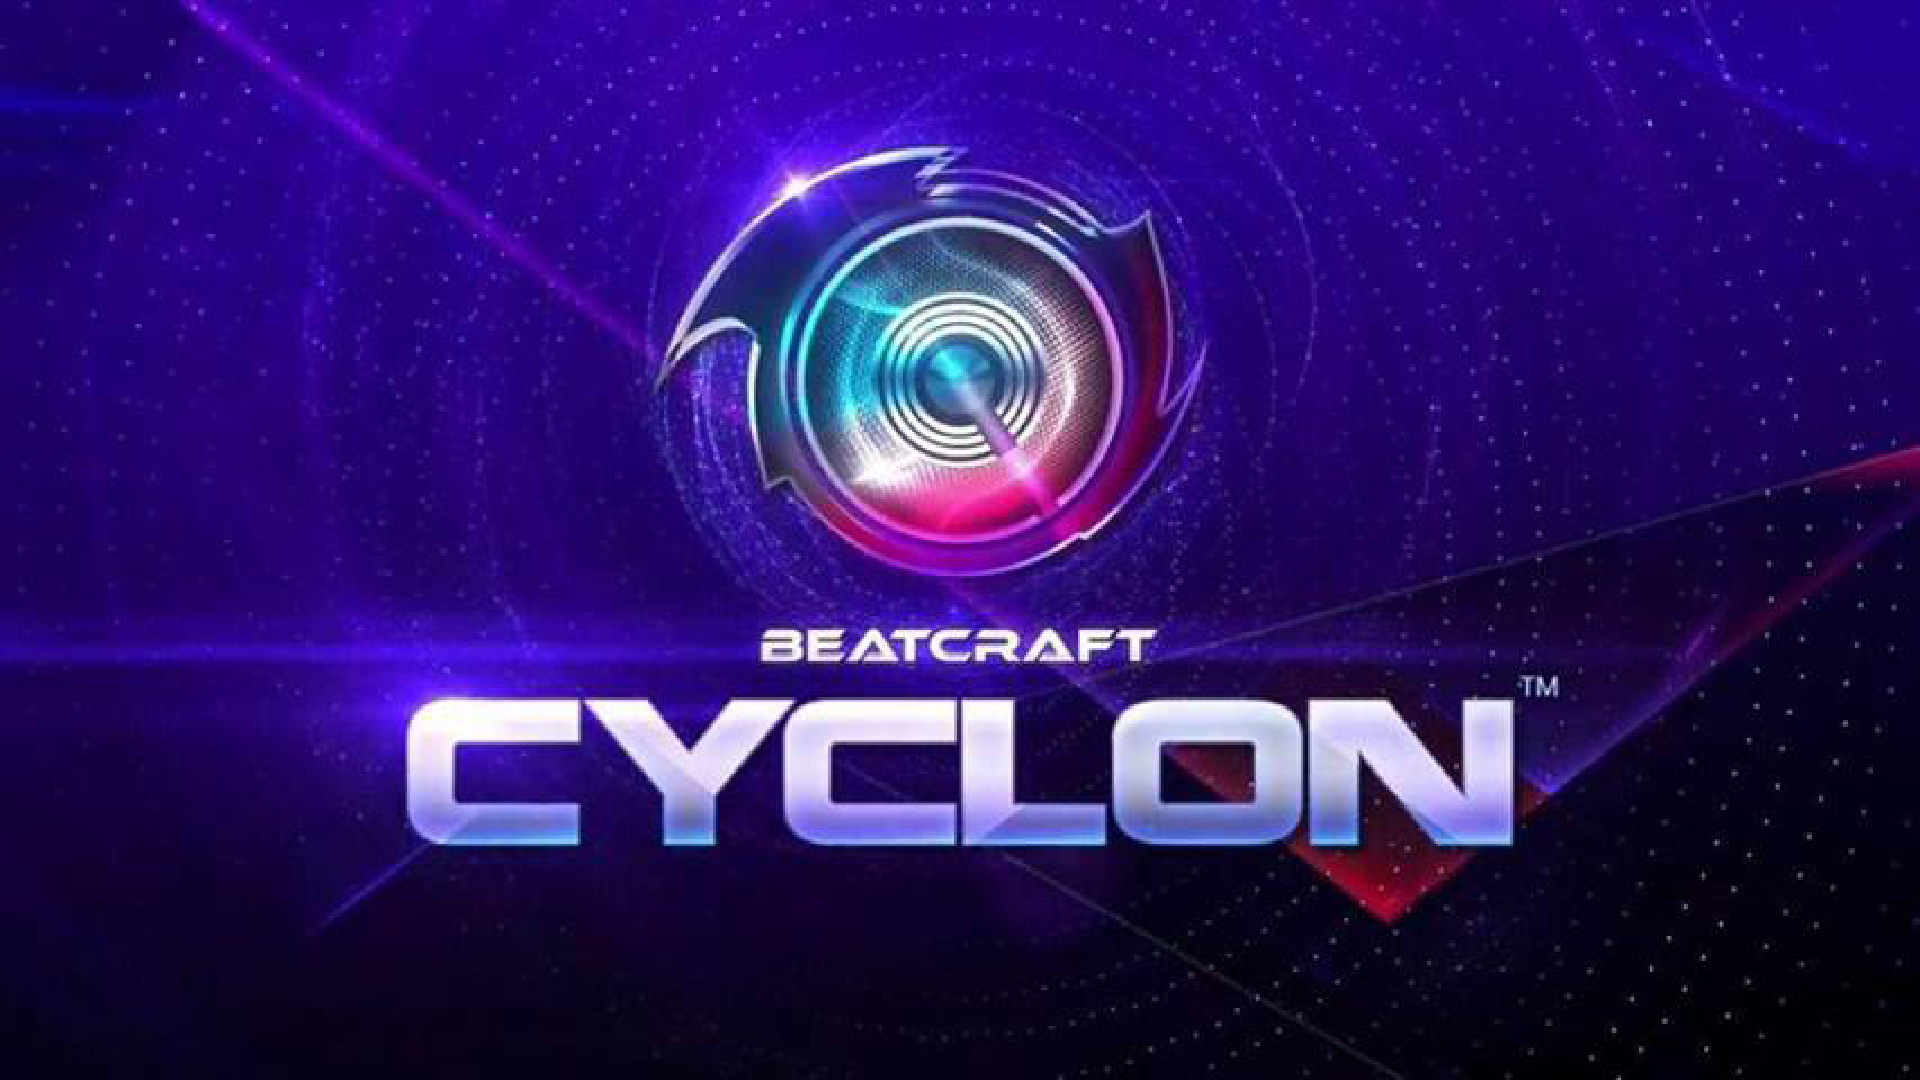 Beatcraft CYCLON Logo